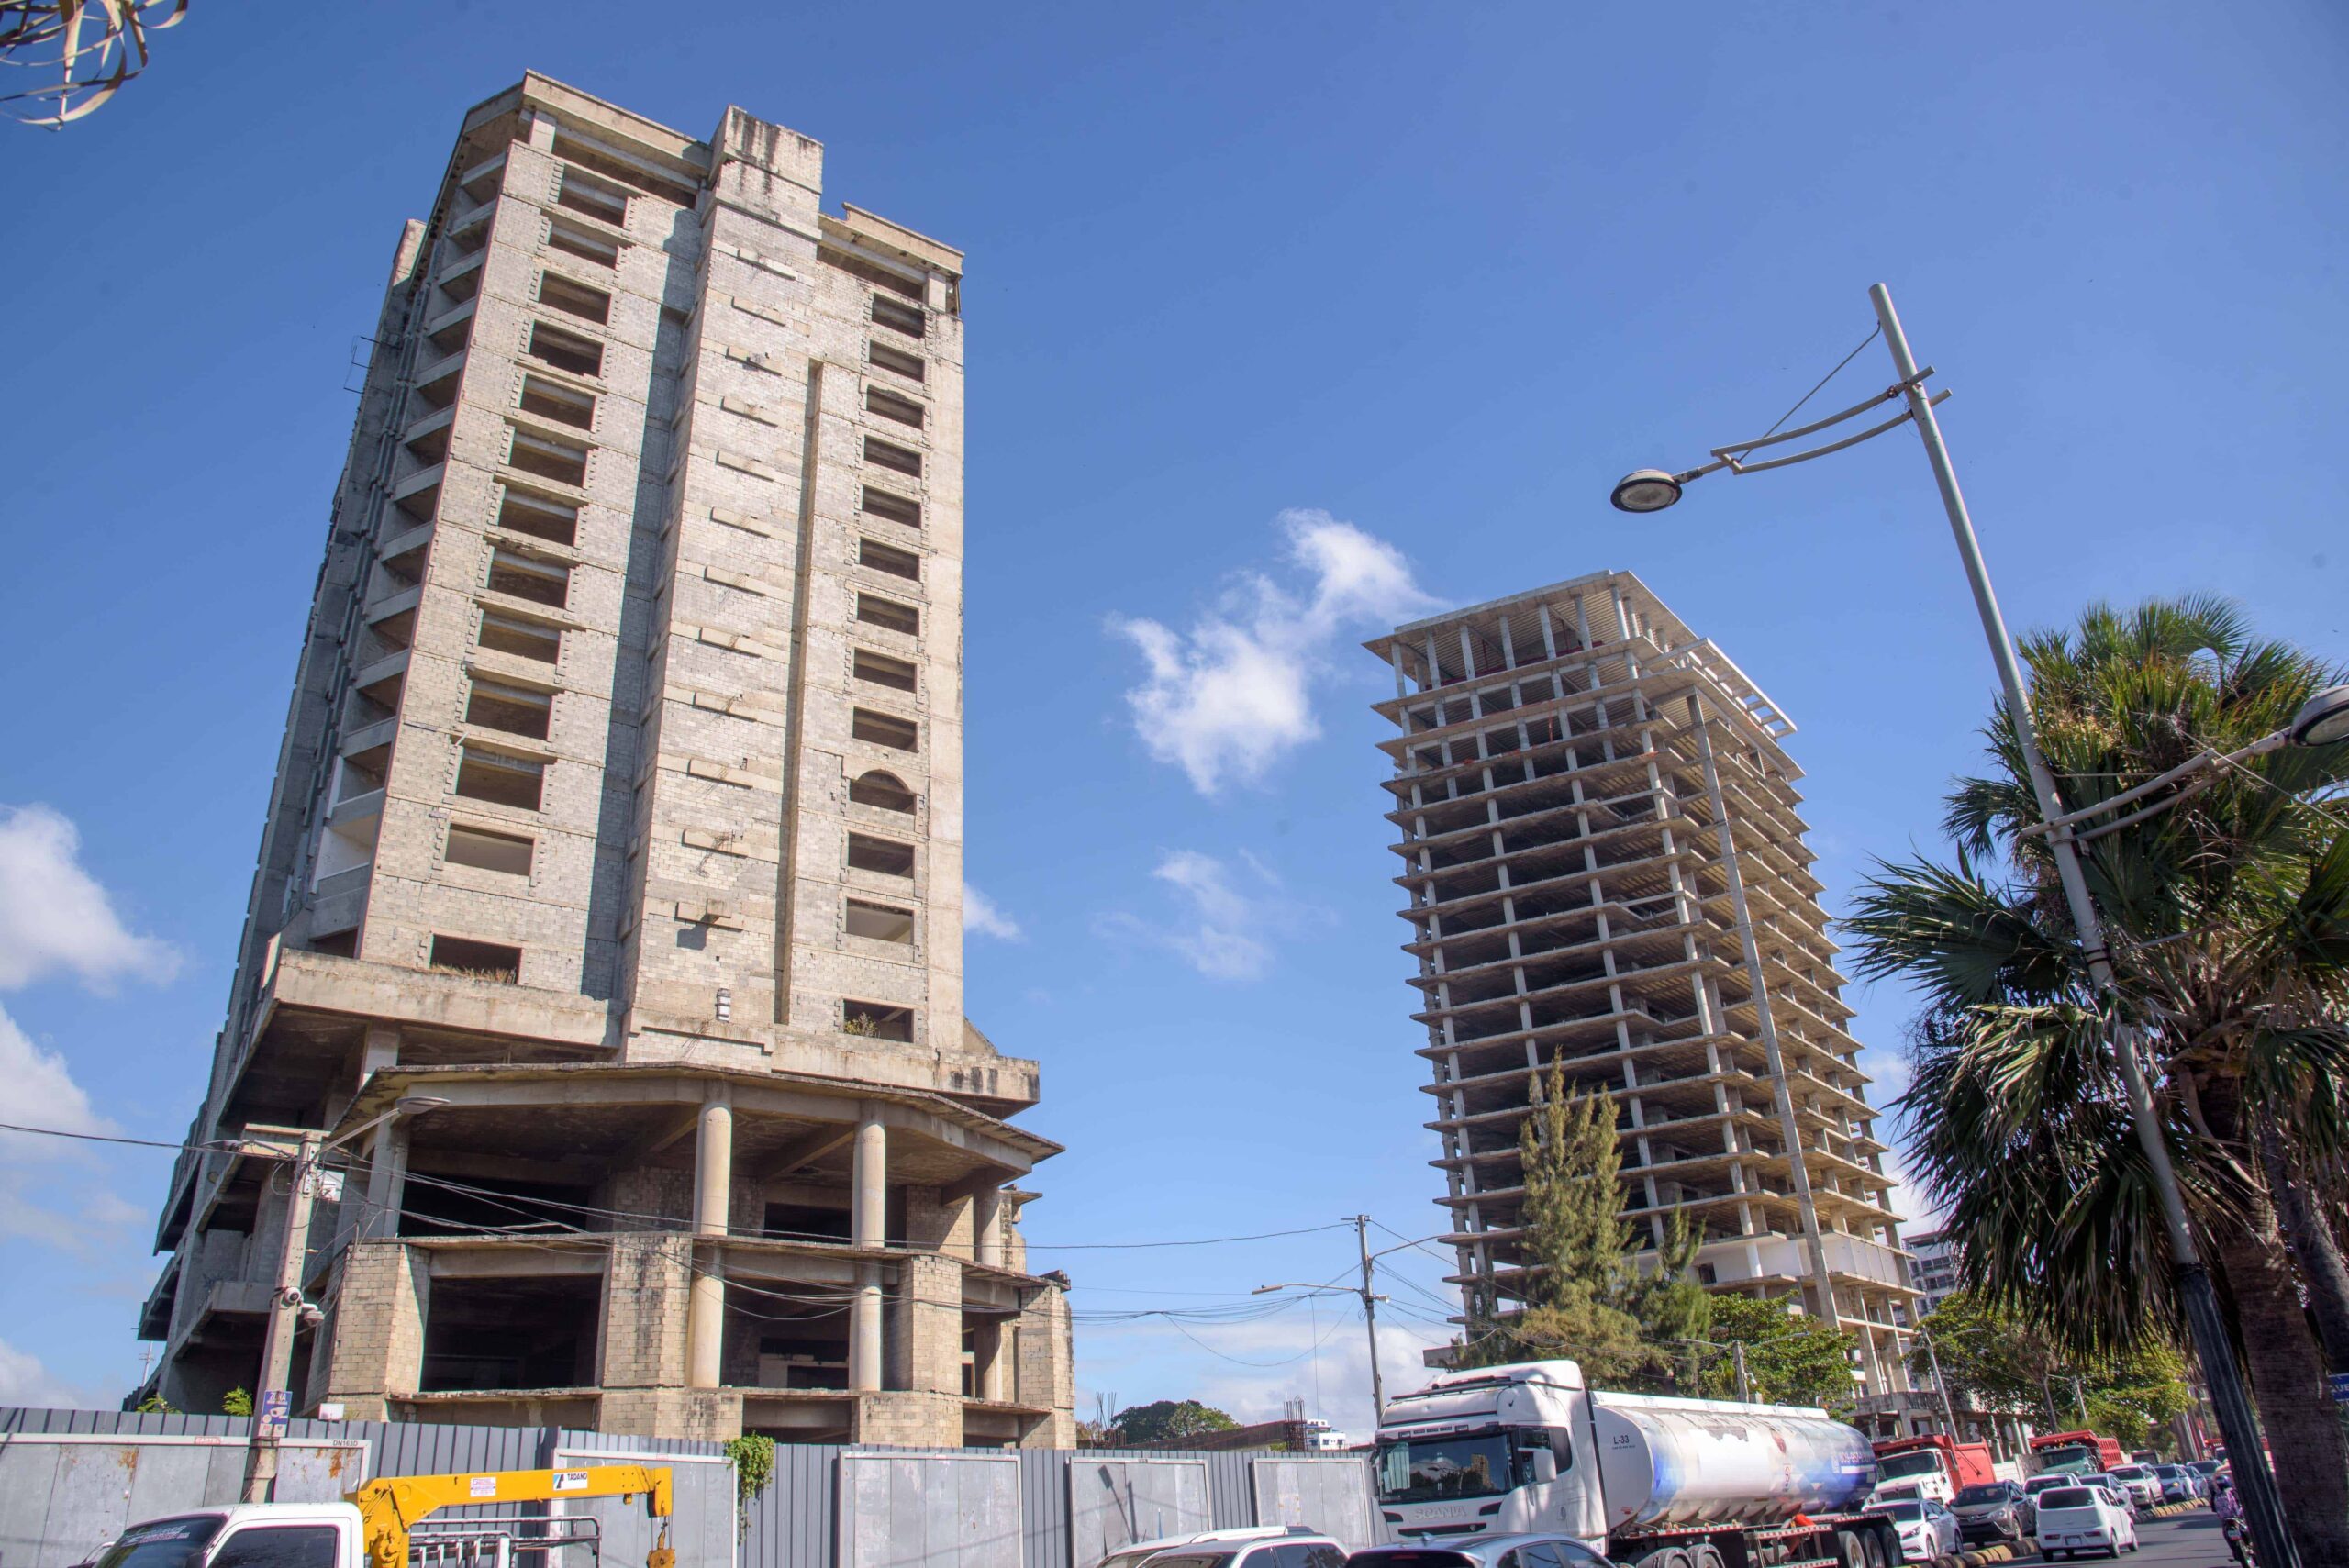 Litis judiciales y falta de inversión paralizan por años edificios en Malecón